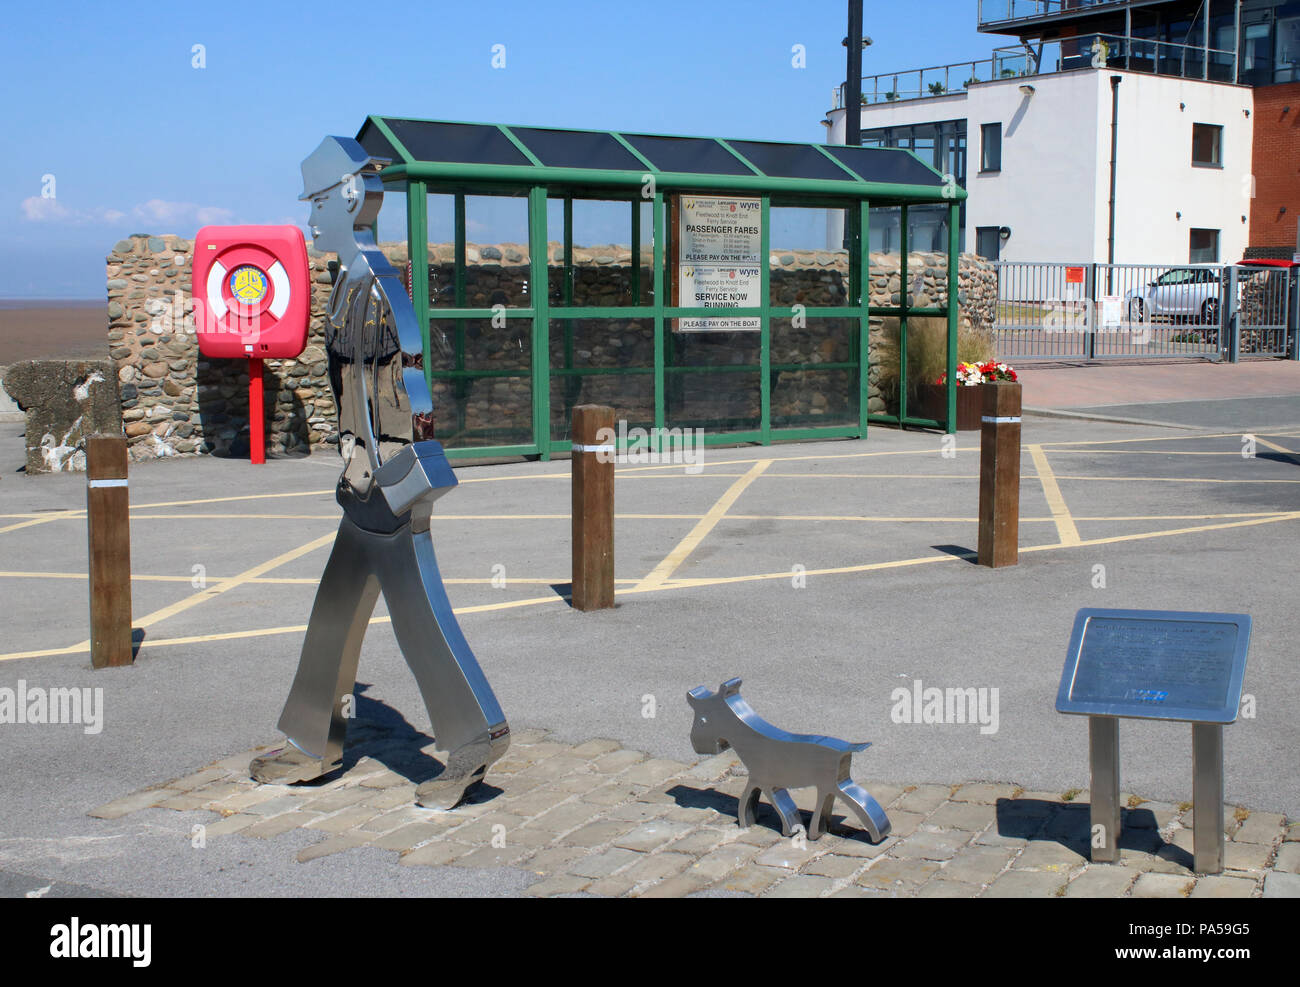 Edelstahl Skulptur, in der Nähe der Fähre Helling, der ein Streichholz  Mensch und Hund zu gedenken. L S Lowry's links mit Knott End-on-Sea,  Lancashire, UK Stockfotografie - Alamy